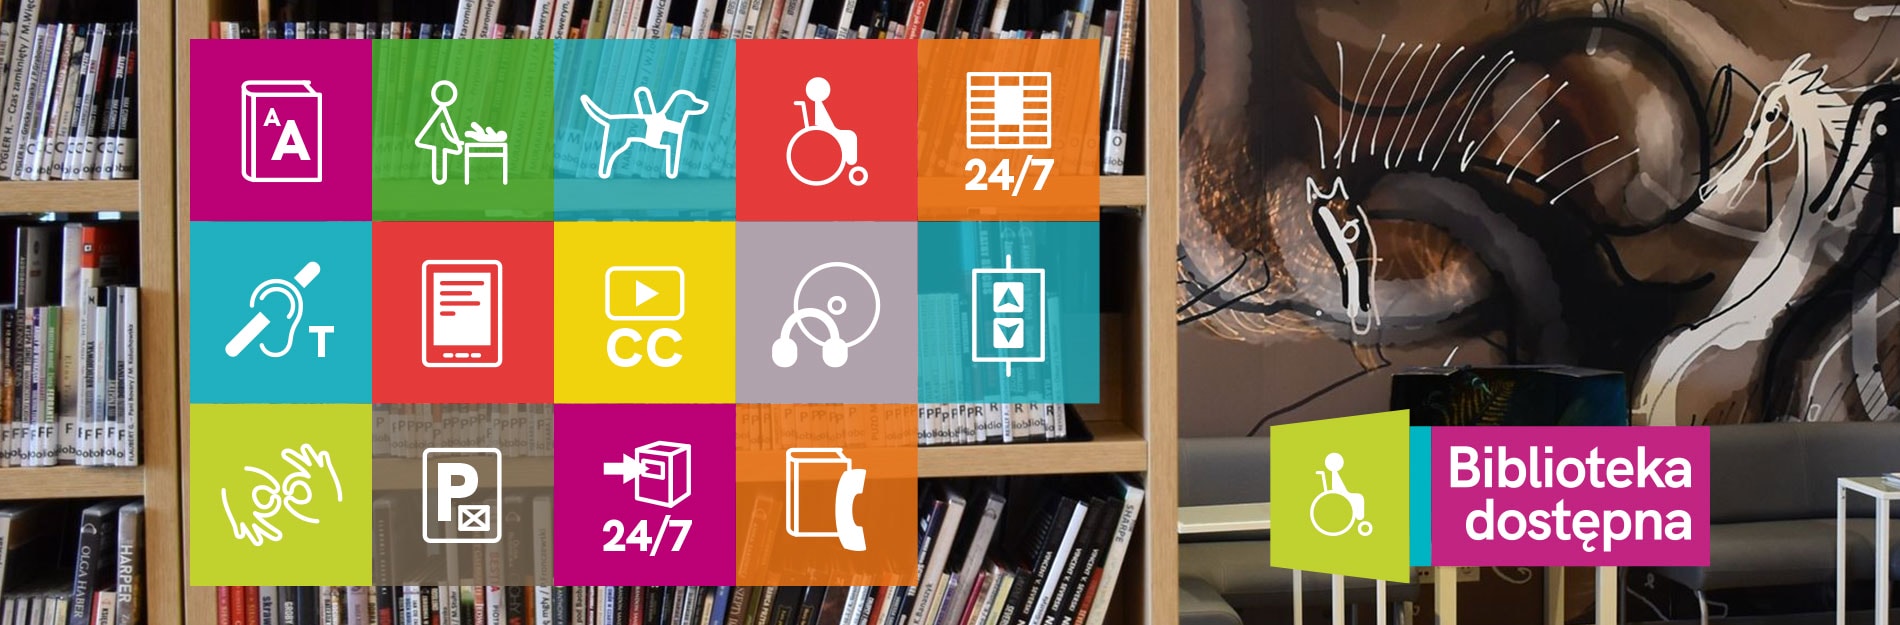 Biblioteka dostępna - baner akcji. W tle zdjęcie regałów z książkami. Na pierwszym planie ikonki związane z dostępnością.